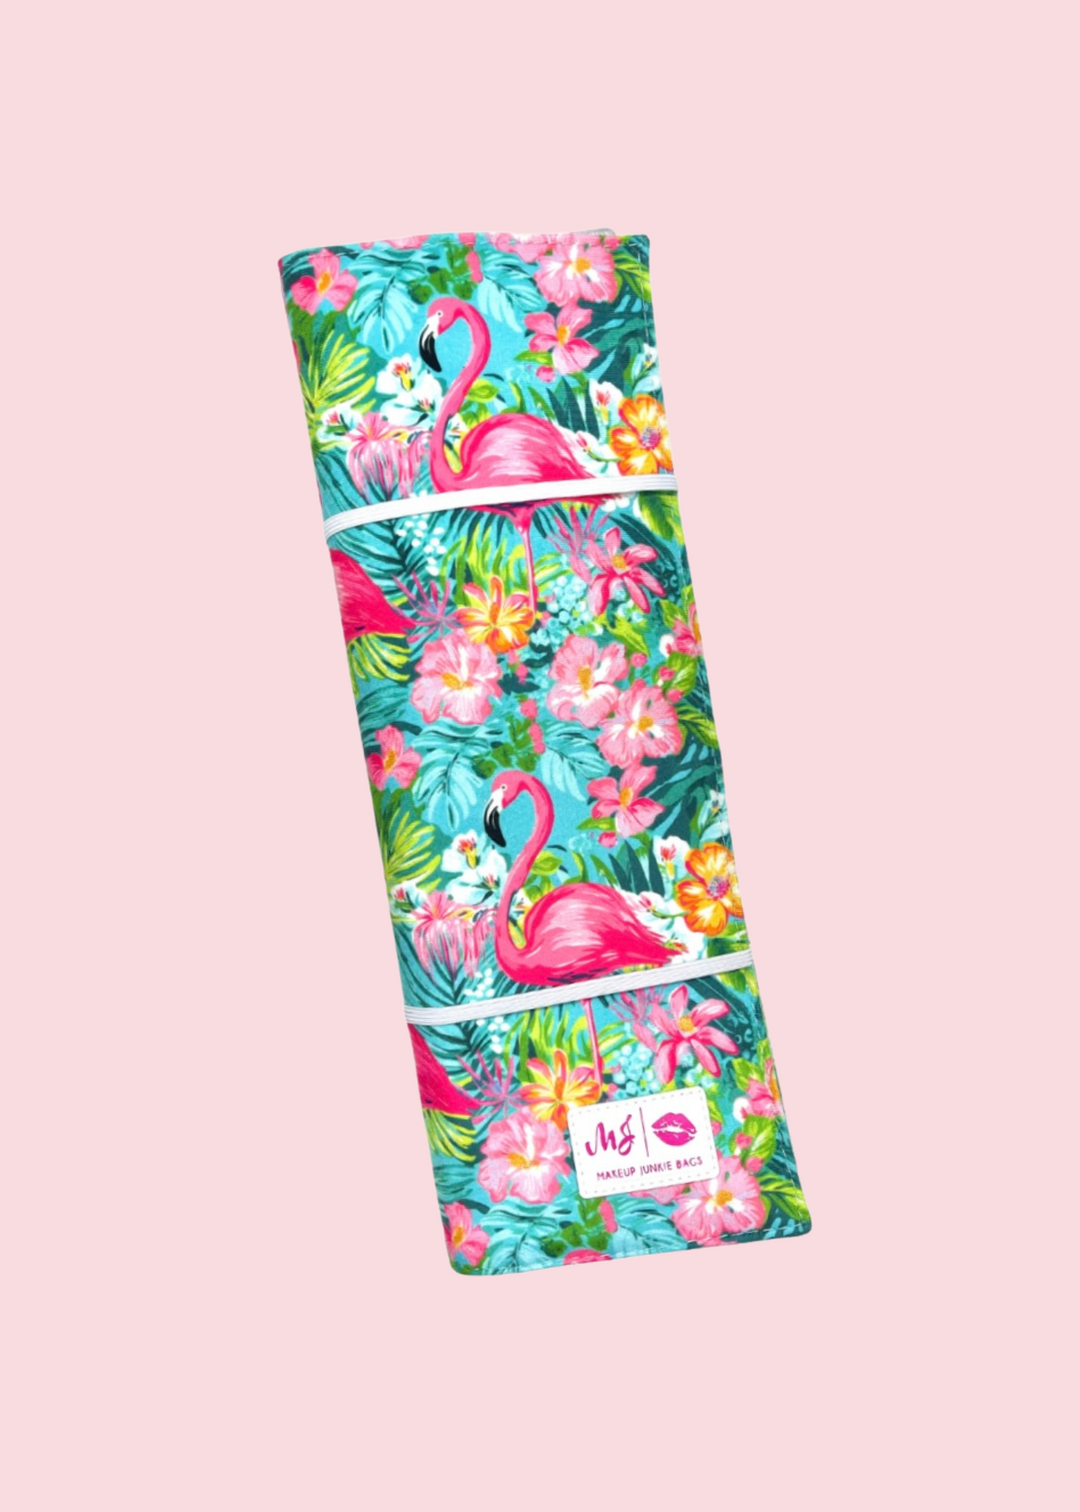 Makeup Junkie Bags - Flamingle Hot Tool [Pre-Order]